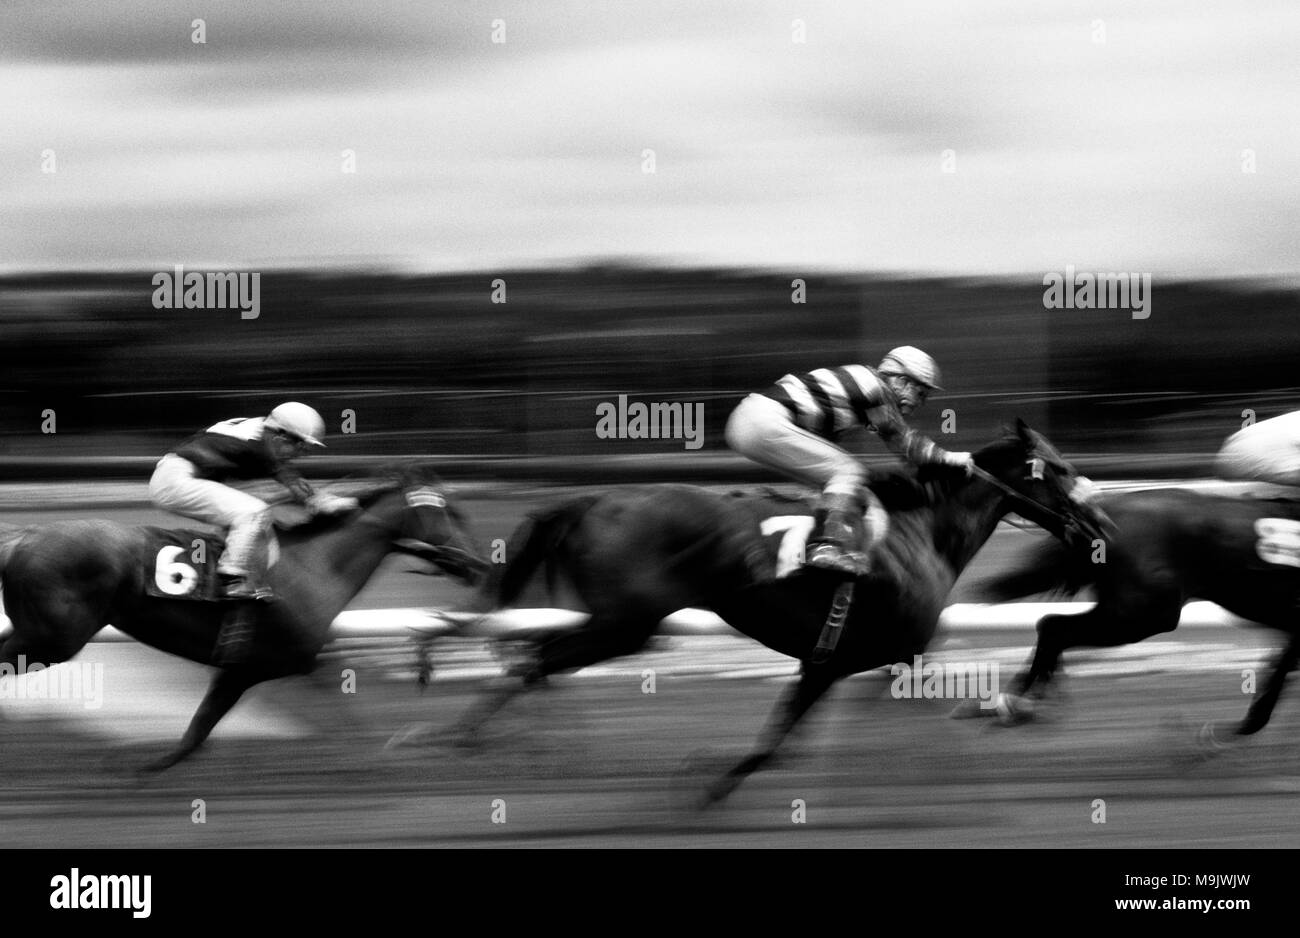 Pferderennen mit Bewegung, während die Reiter und Pferde vorbei gehen, schwarz-weißes Bild Stockfoto